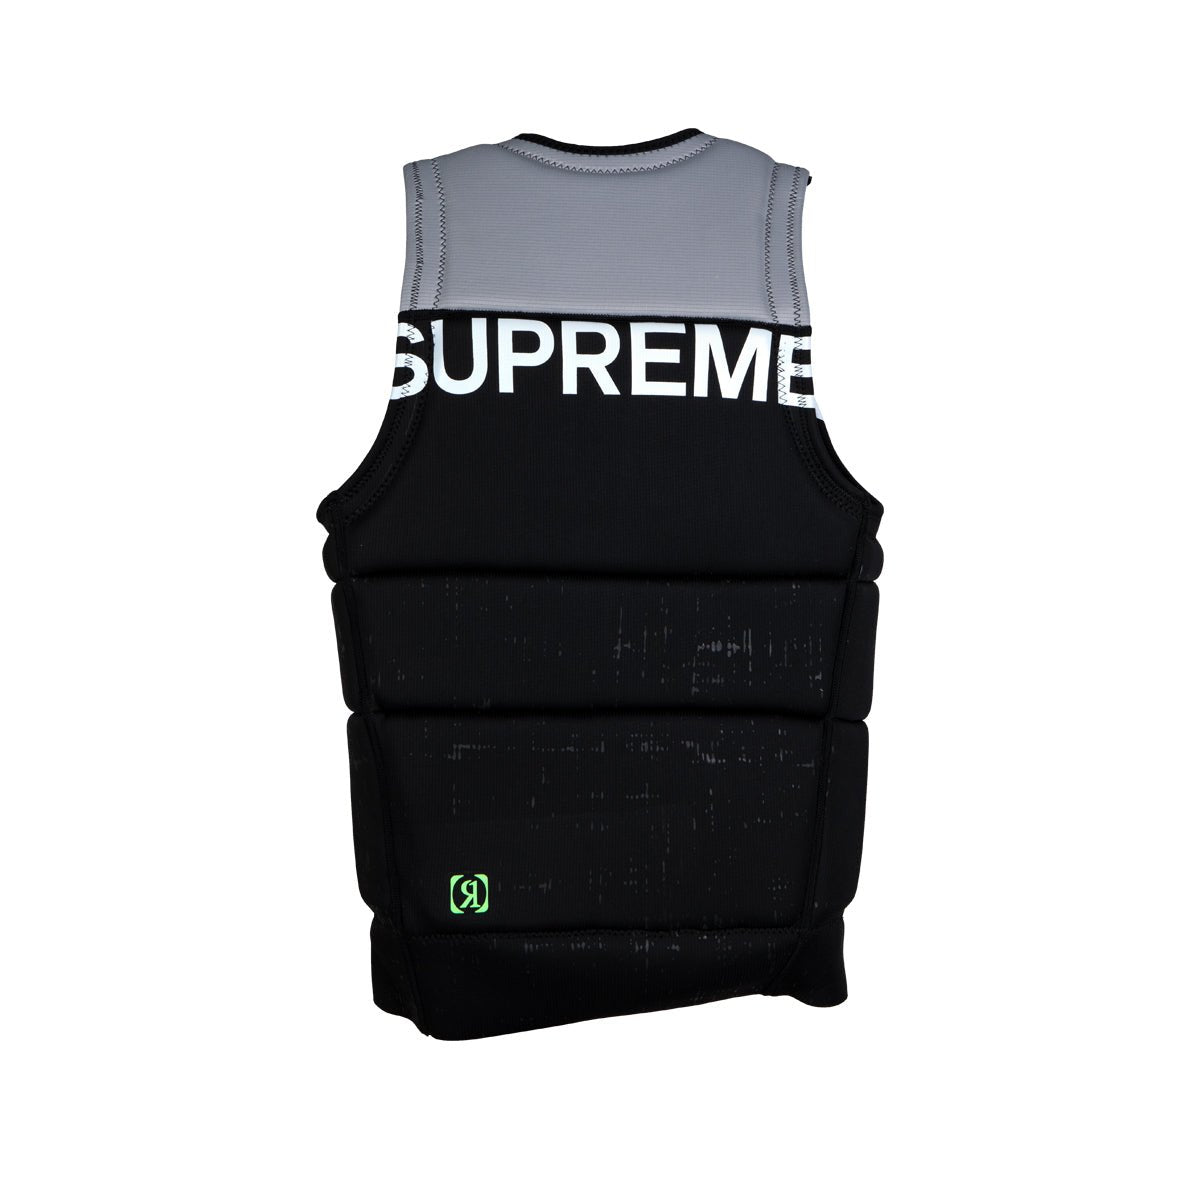 Ronix Supreme Athletic Cut Life Vest– 88 Gear